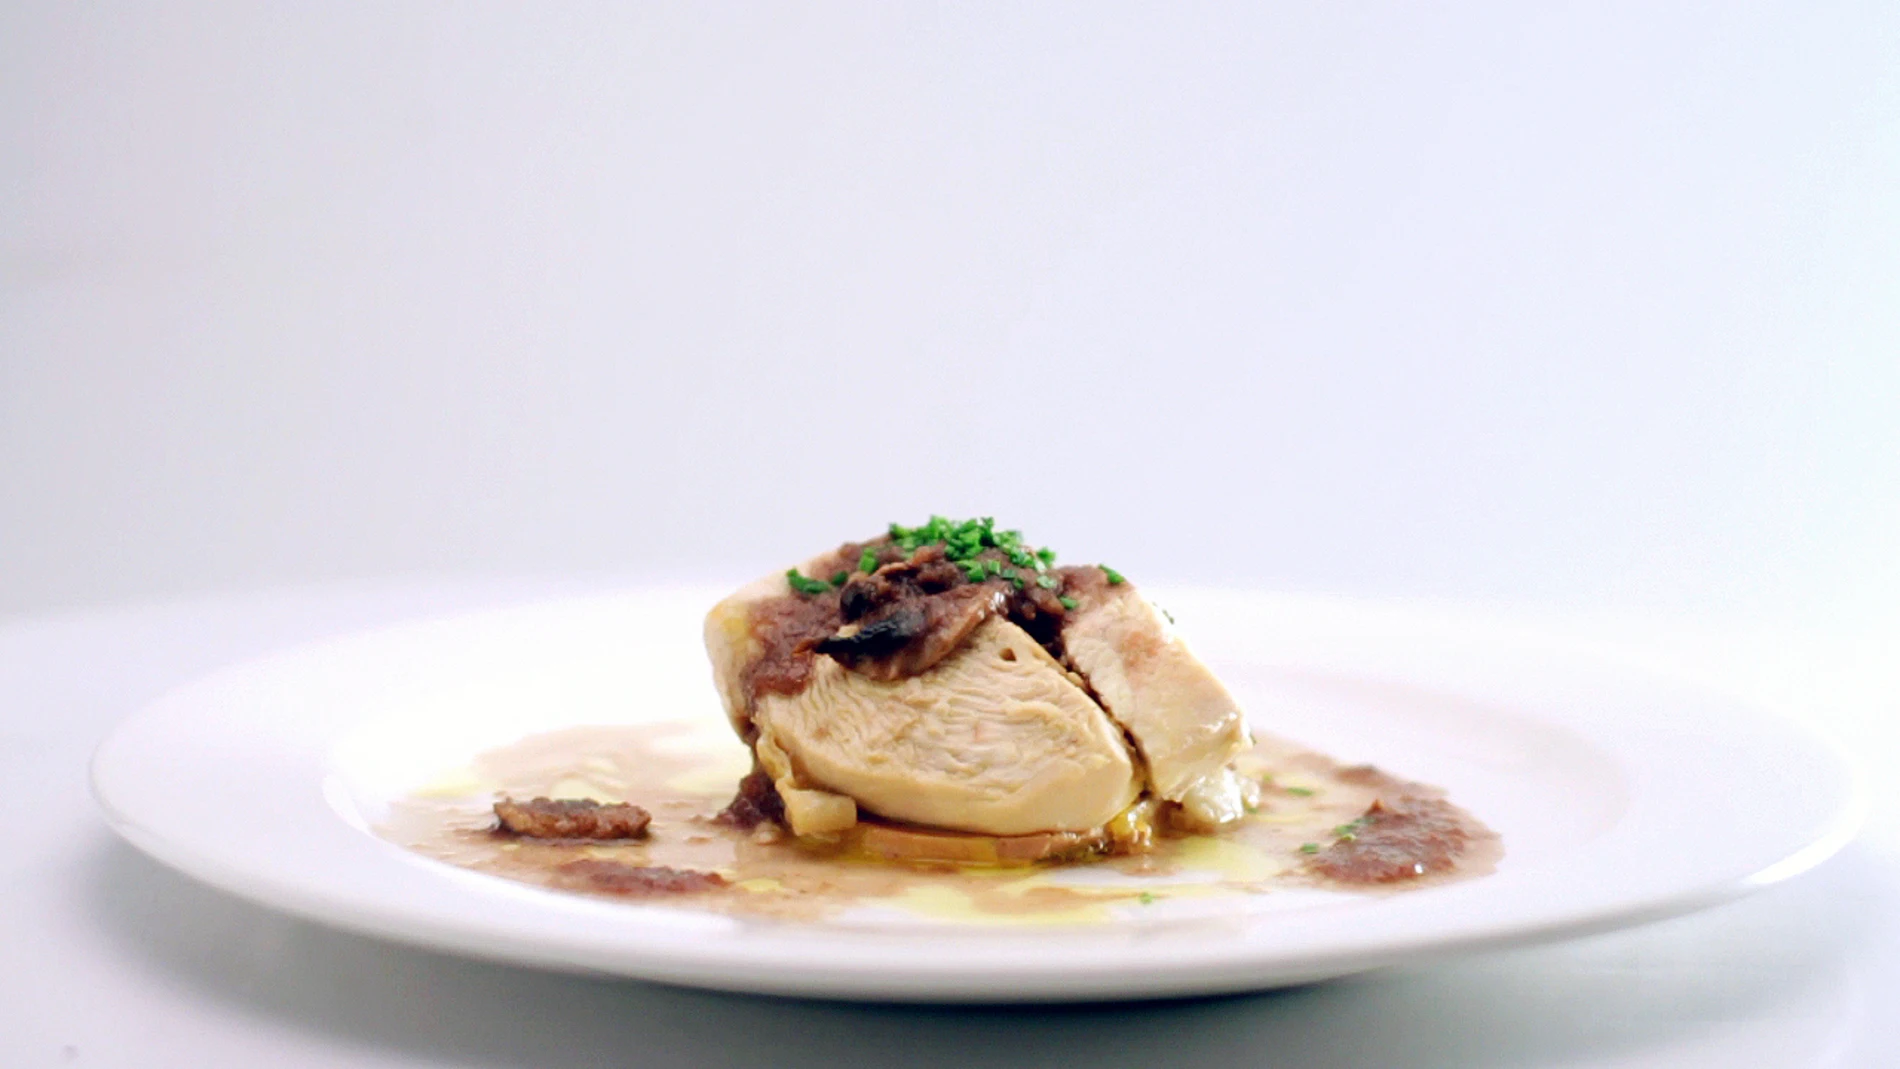 Suprema de pollo con patata chafada, foie gras y salsa de setas